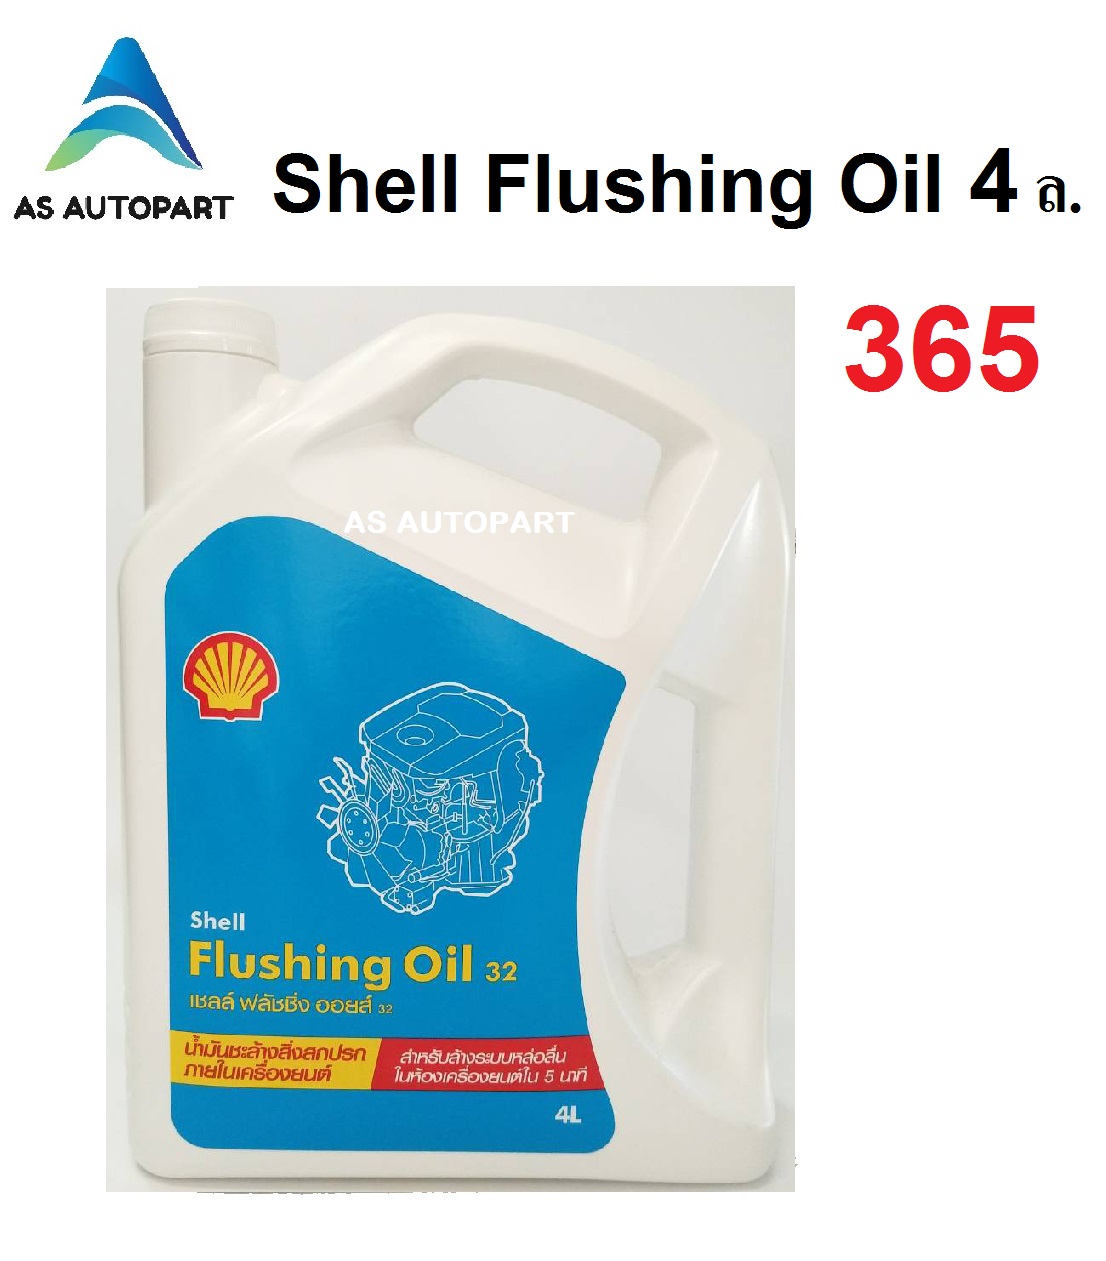 น้ำมันล้างเครื่อง เชลล์ ฟลัชชิ่ง ออยล์ Shell Flushing Oil 32 4 ลิตร